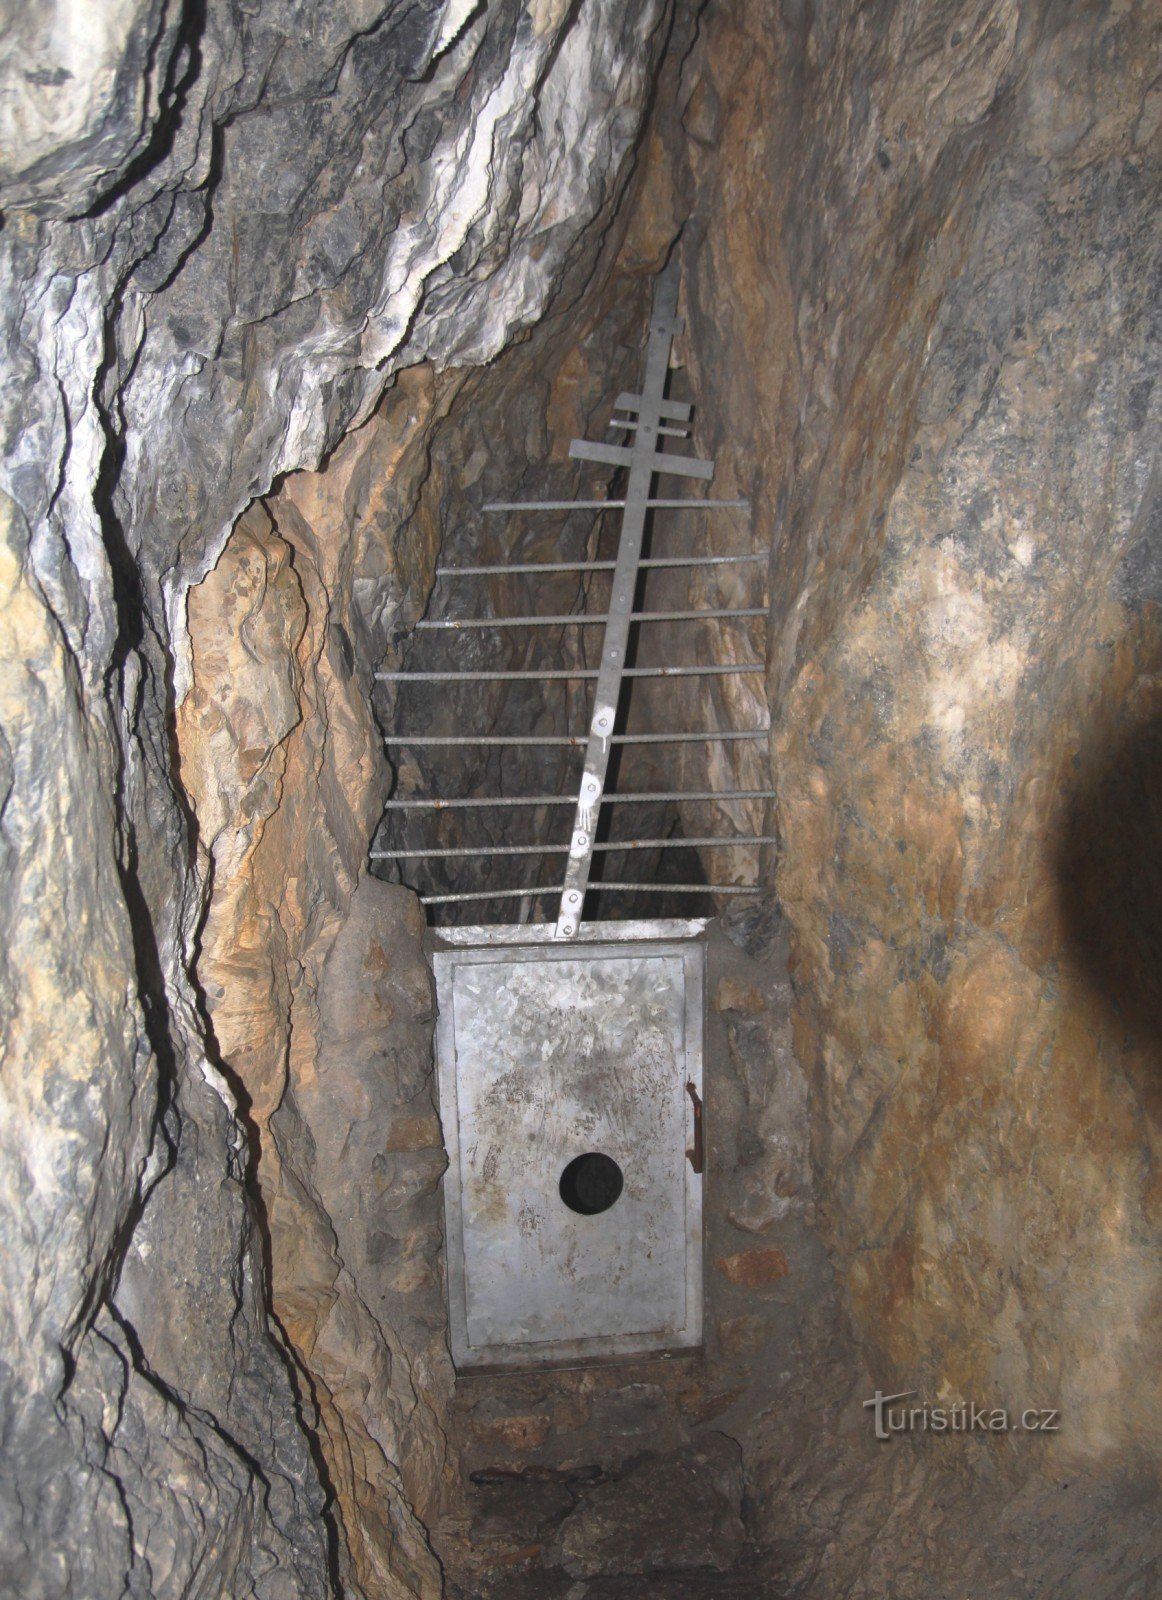 Sicherung des Eingangs zur abgrundtiefen Fortsetzung der Höhle